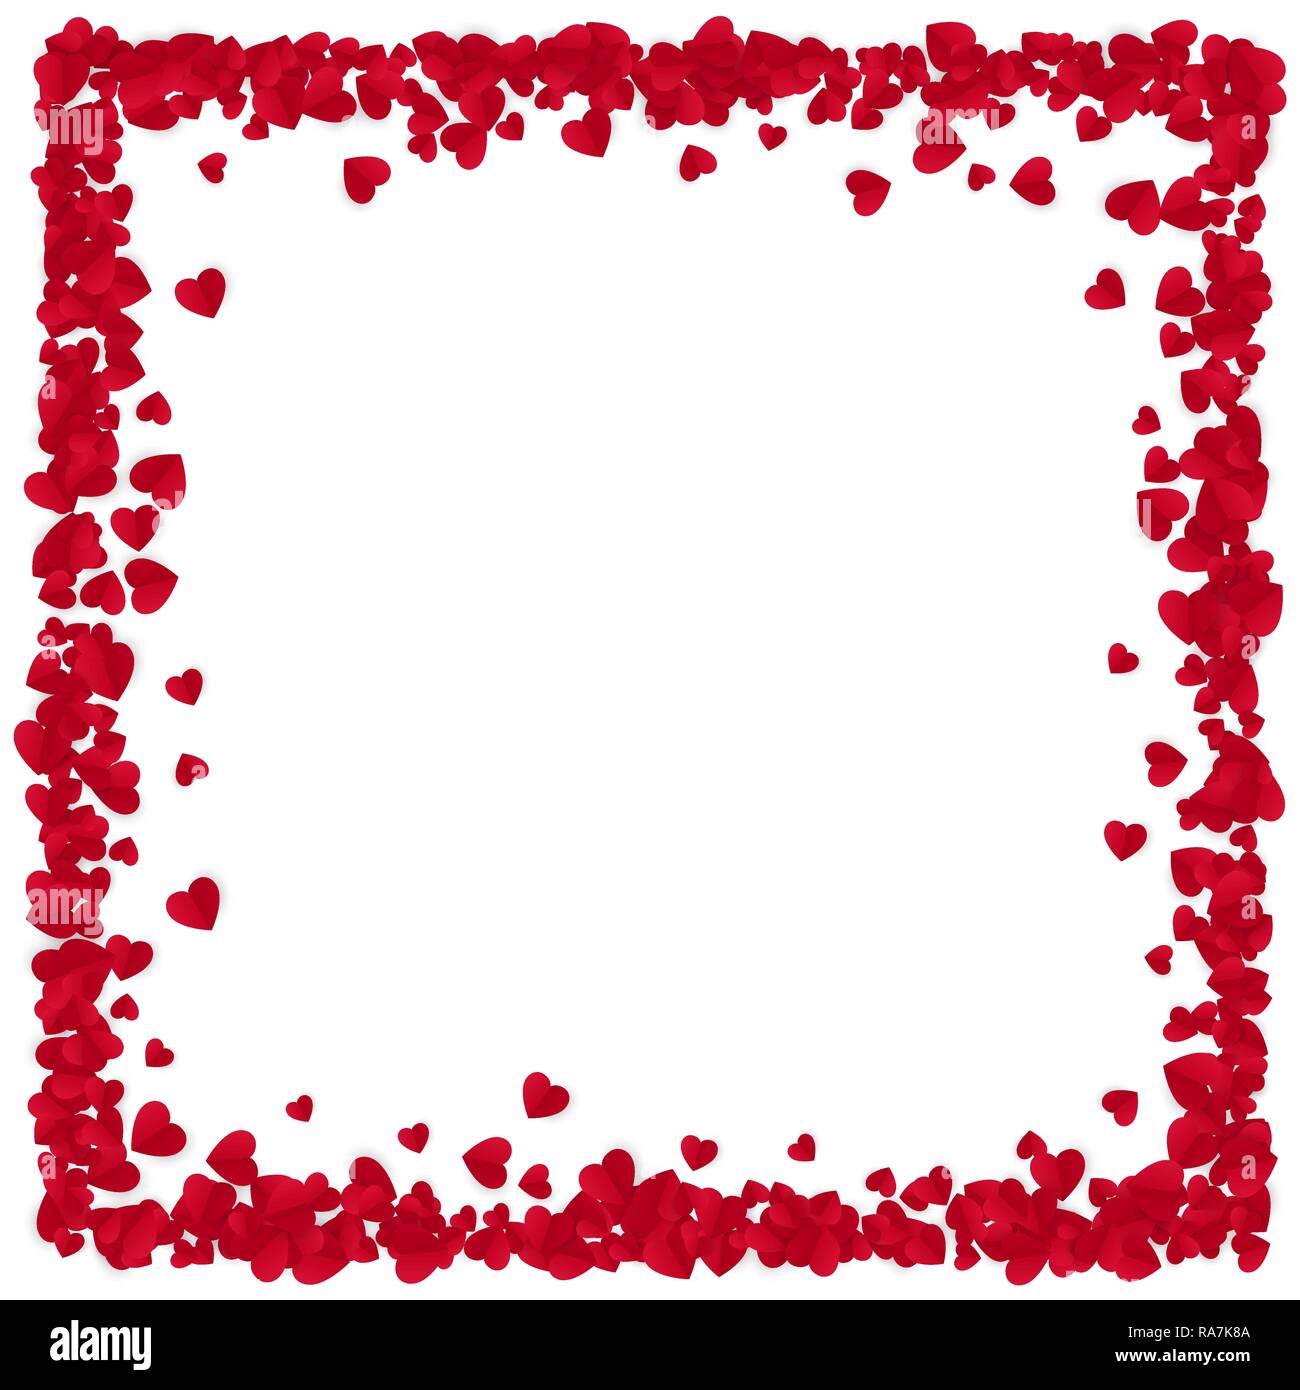 Rotes Papier Herzen Bild Hintergrund. Valentinstag romantischer Hintergrund. Herz Rahmen mit Platz für Text. Vector Illustration auf weißen backgrou isoliert Stock Vektor